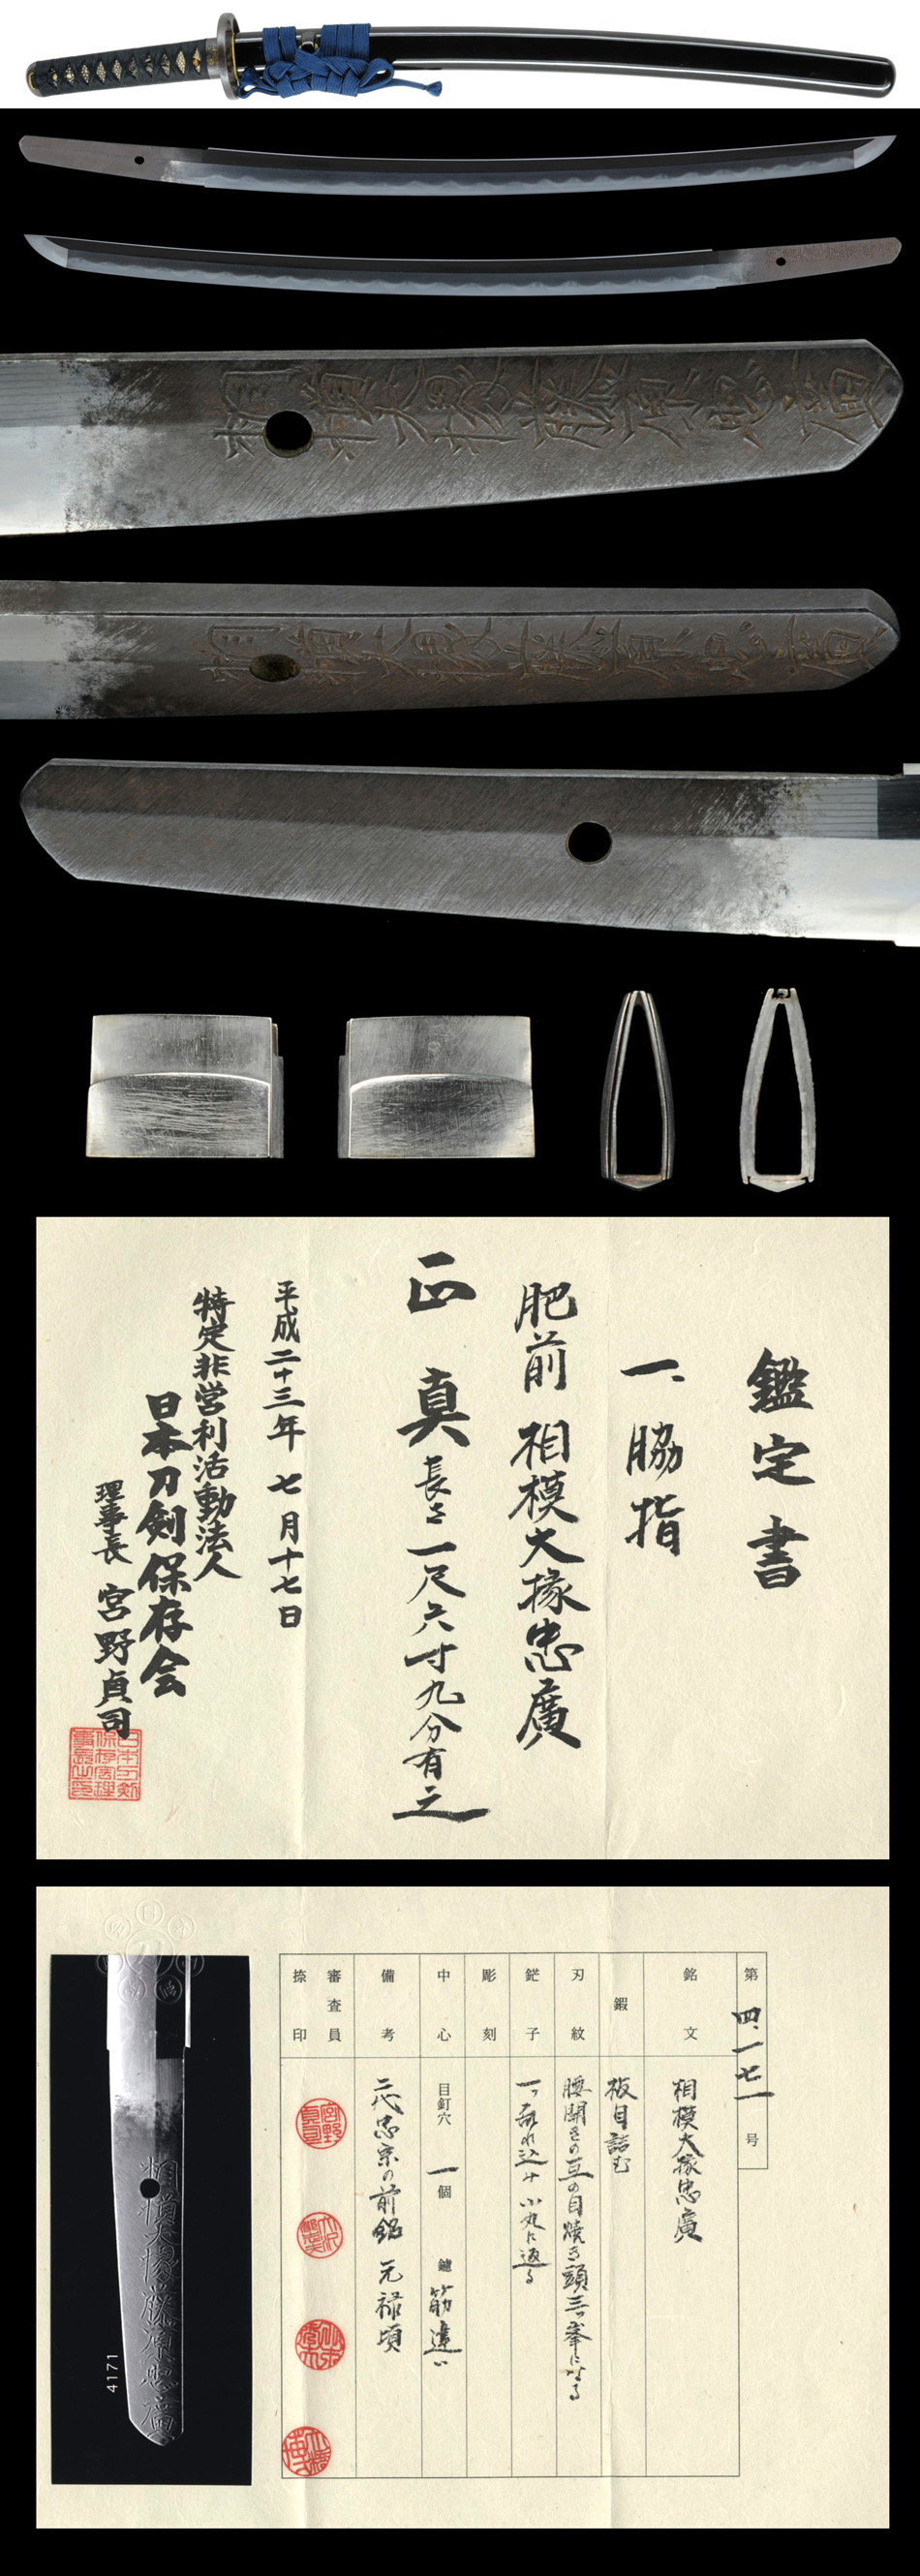 脇差 相模大掾忠廣 (WA-081411)｜刀・日本刀の販売なら日本刀専門店の 